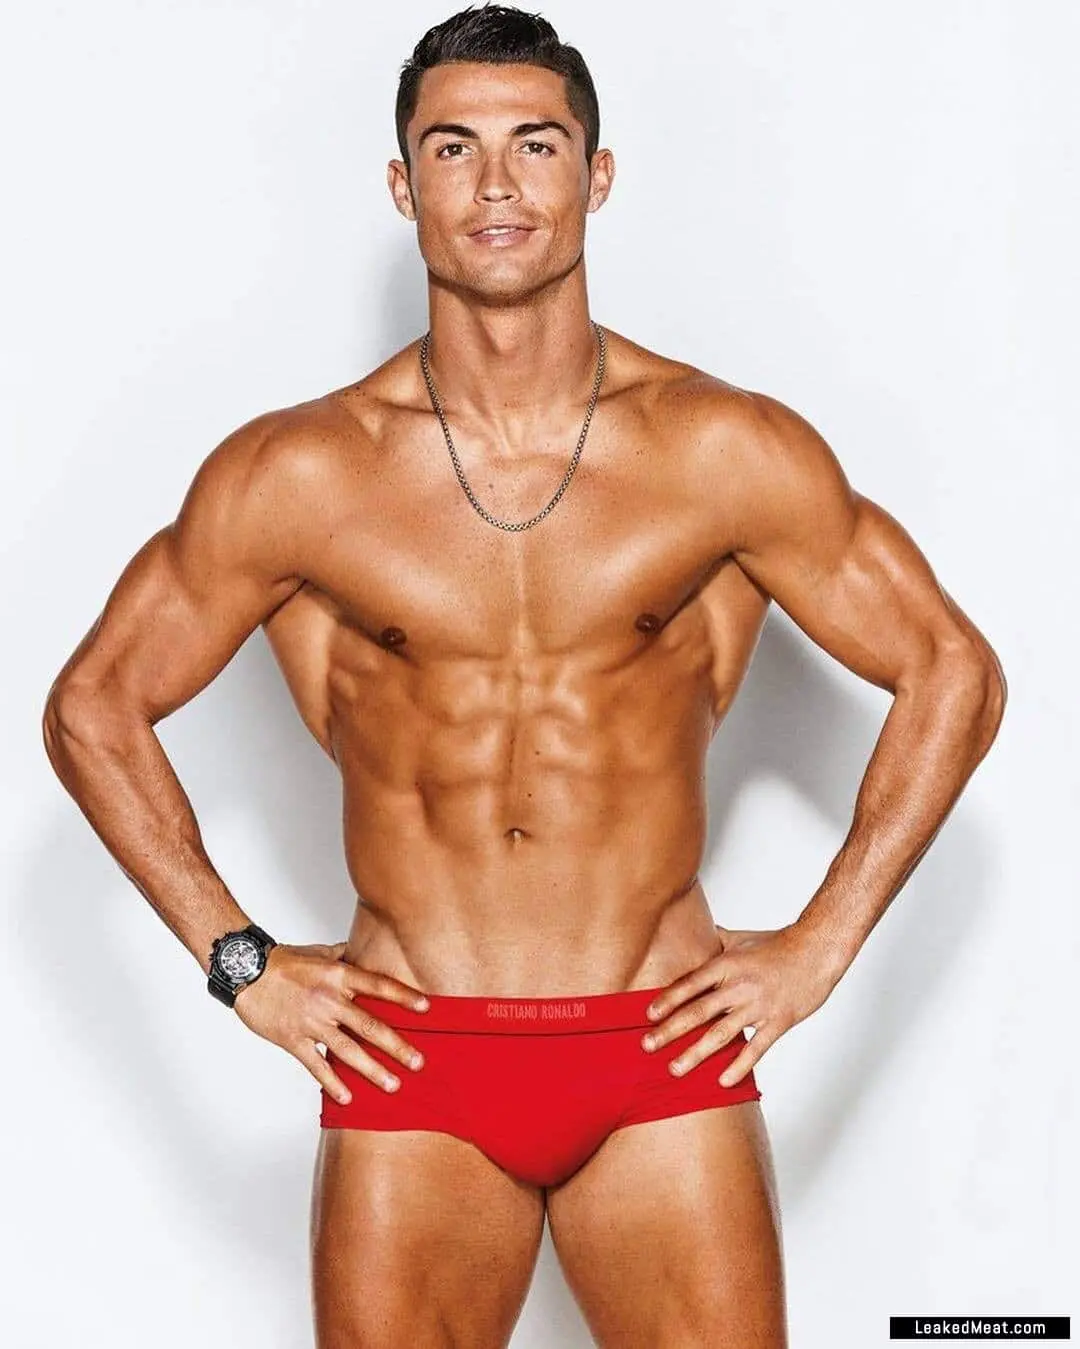 Cristiano Ronaldo naked